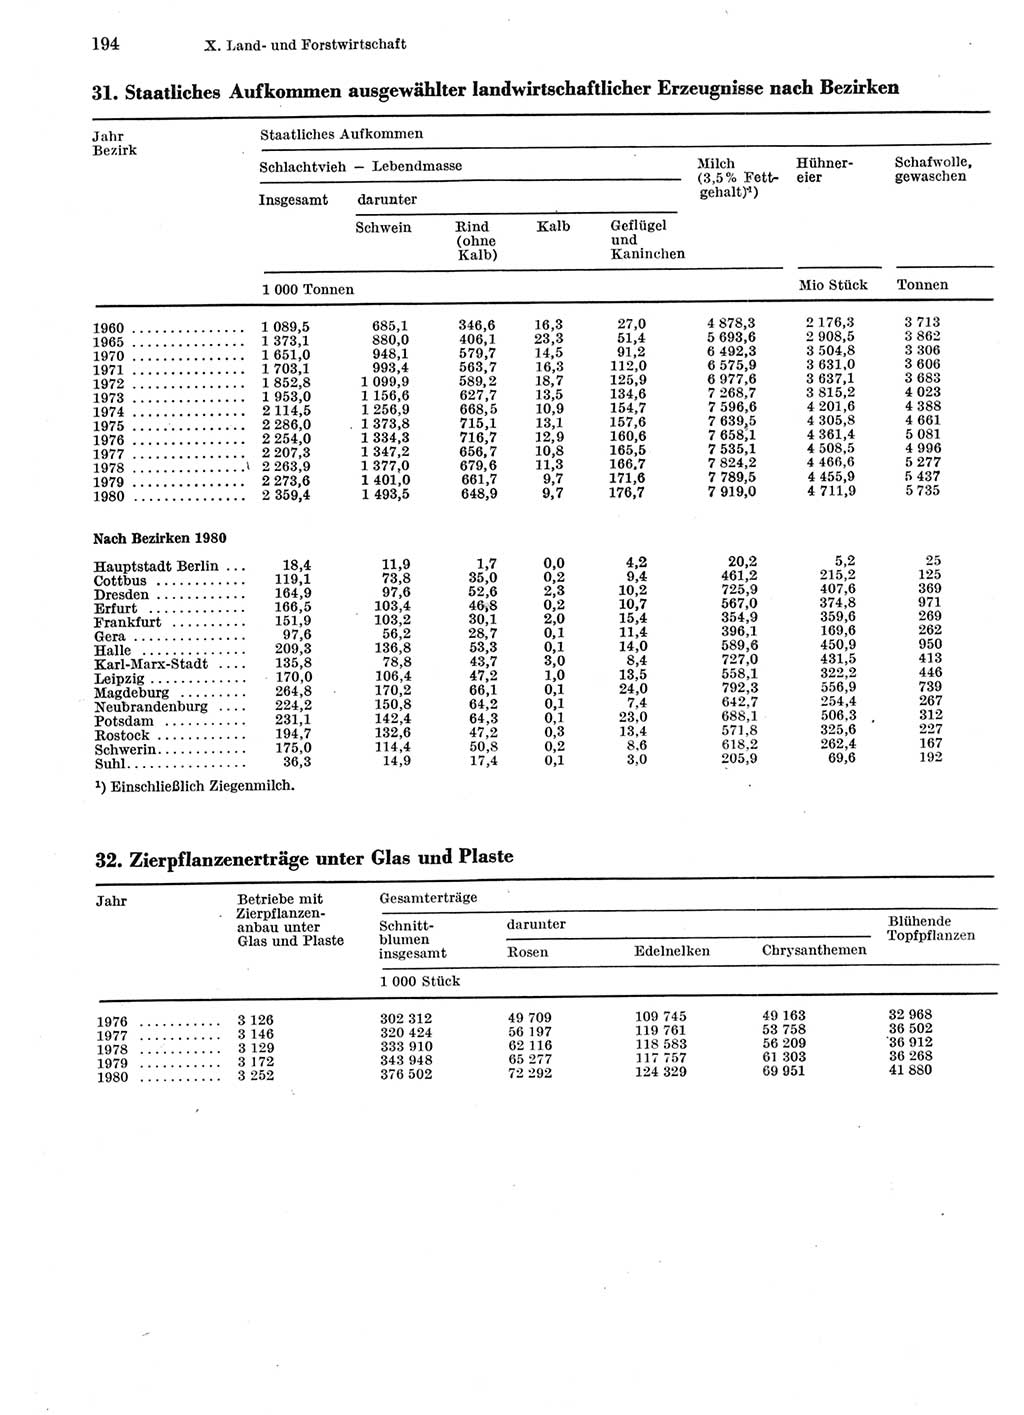 Statistisches Jahrbuch der Deutschen Demokratischen Republik (DDR) 1981, Seite 194 (Stat. Jb. DDR 1981, S. 194)